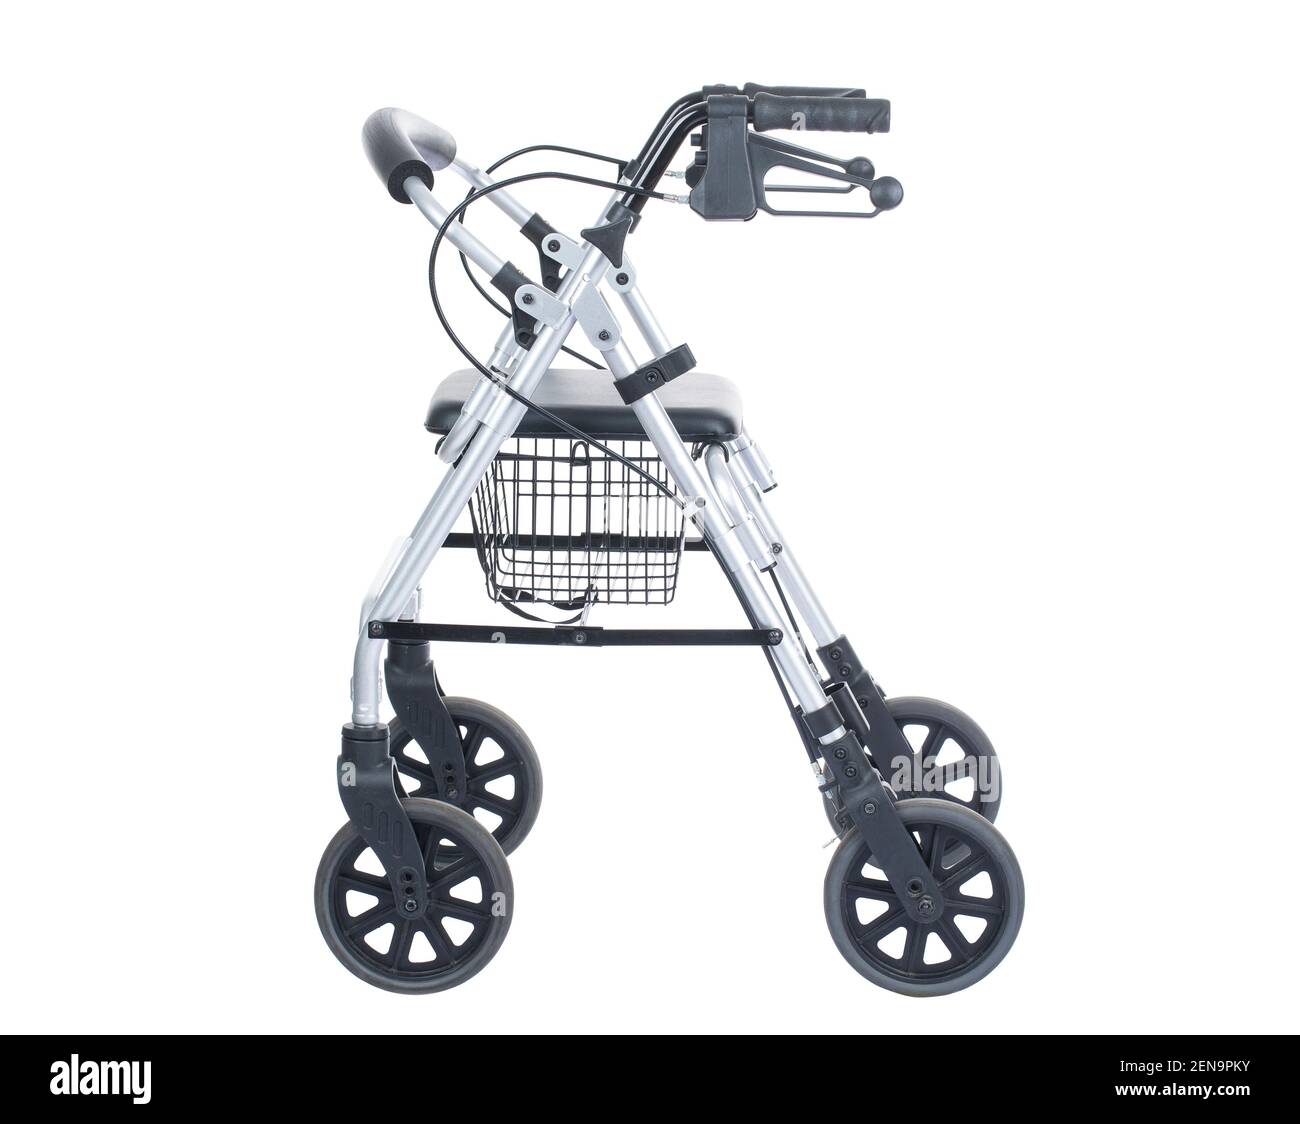 Elderly people walker with wheels, rollator walkers, ambulatory assistive device, walking aid, walker Stock Photo